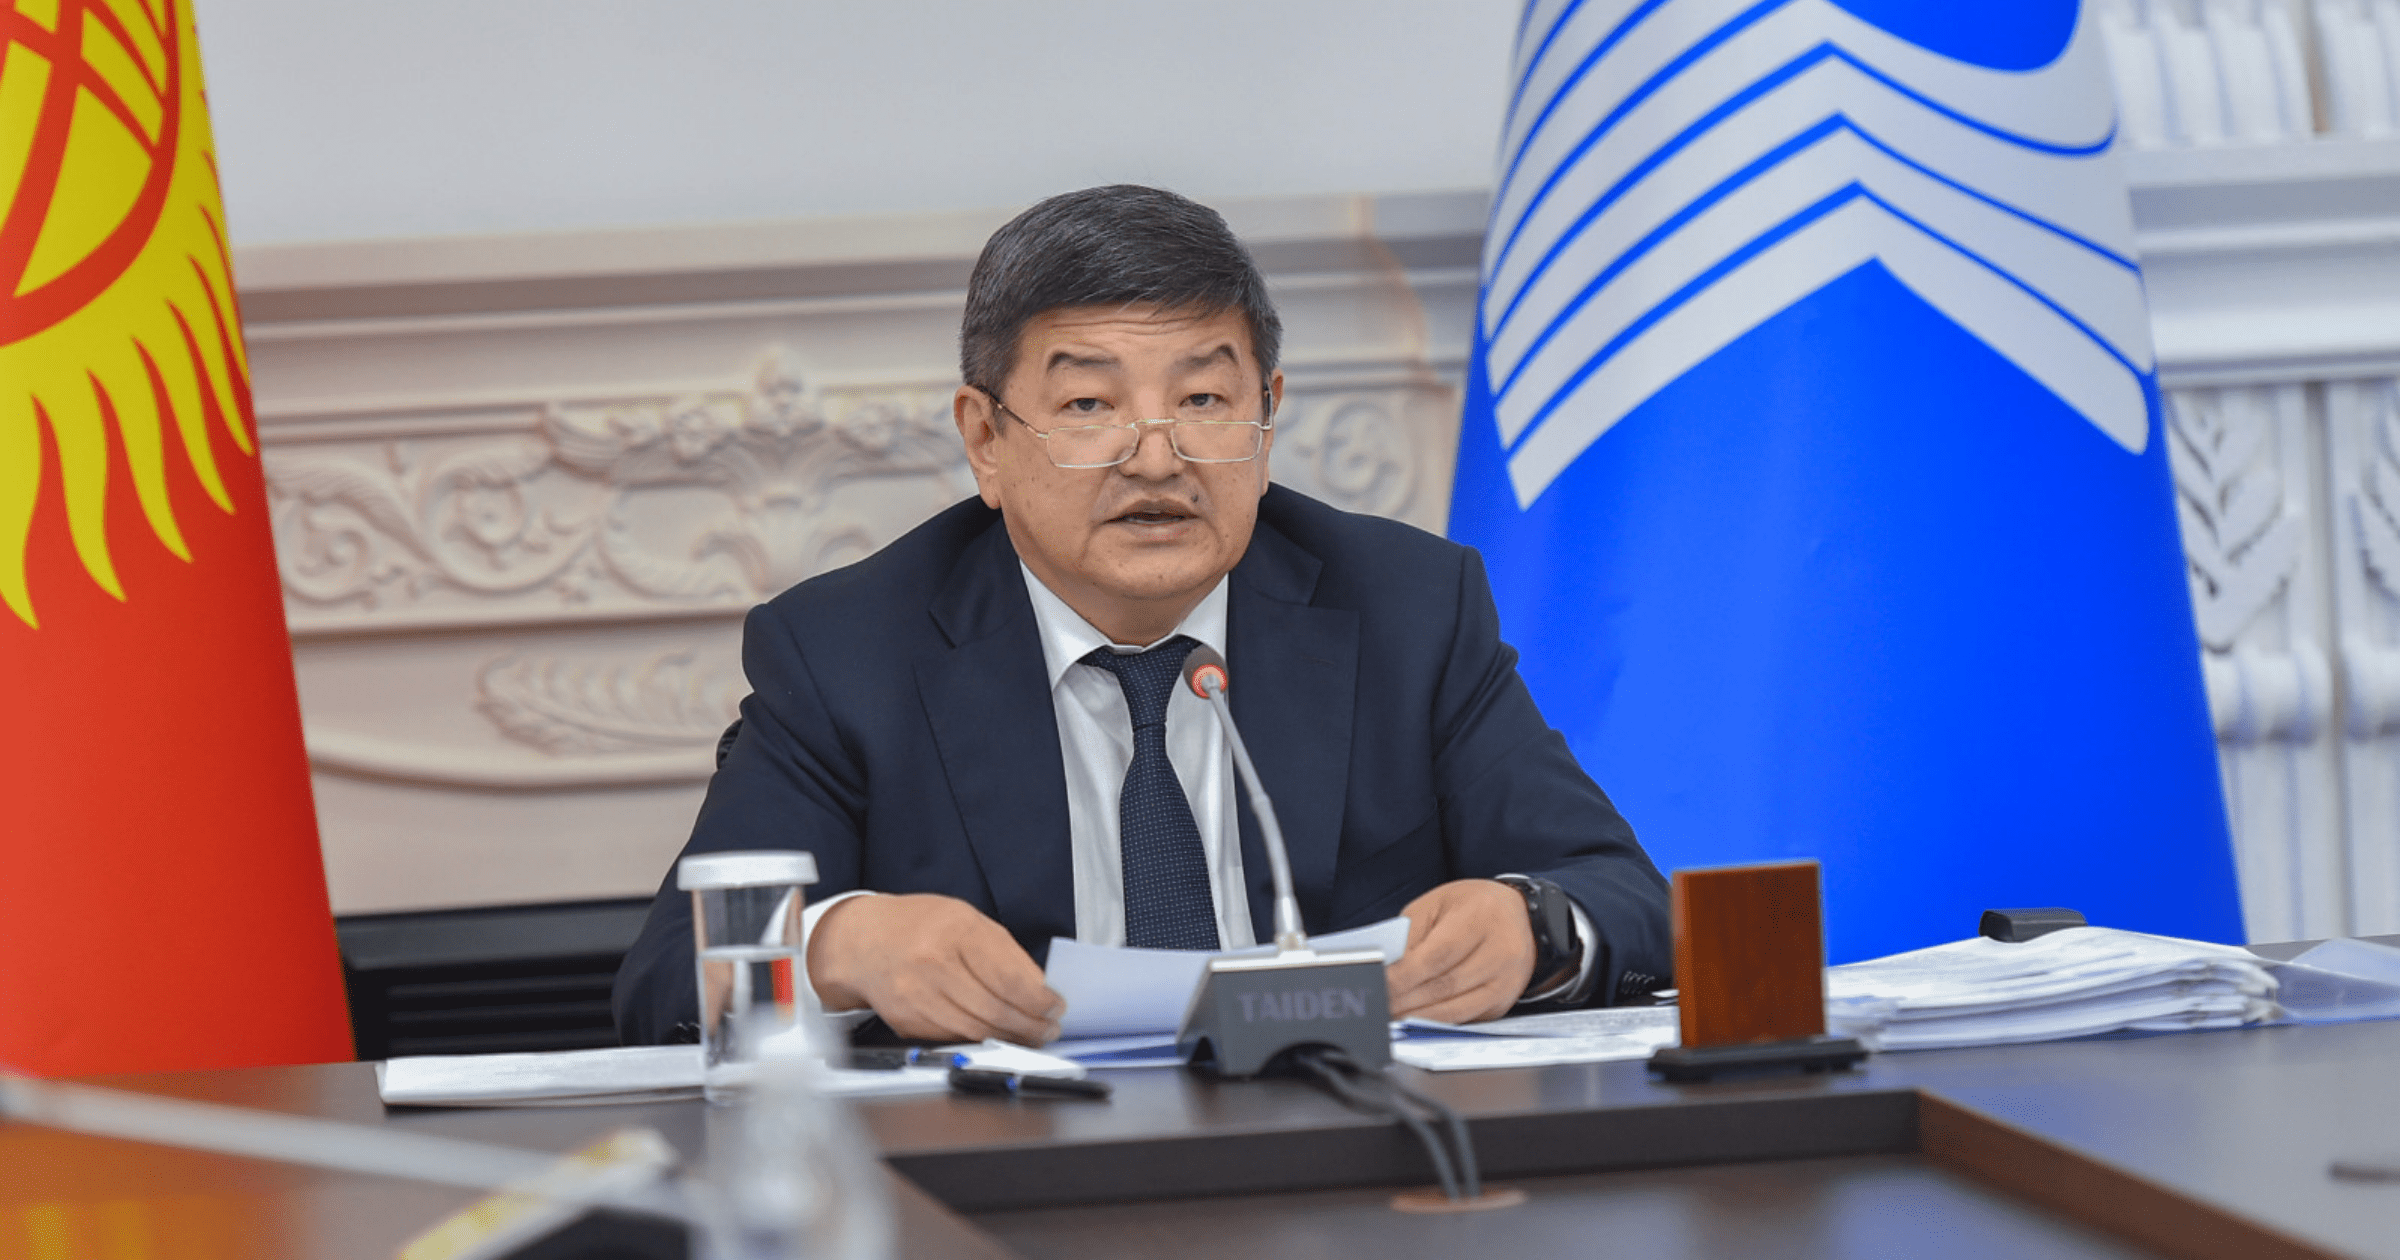 Акылбек Жапаров пригласил инвесторов из СНГ строить энергообъекты в Кыргызстане